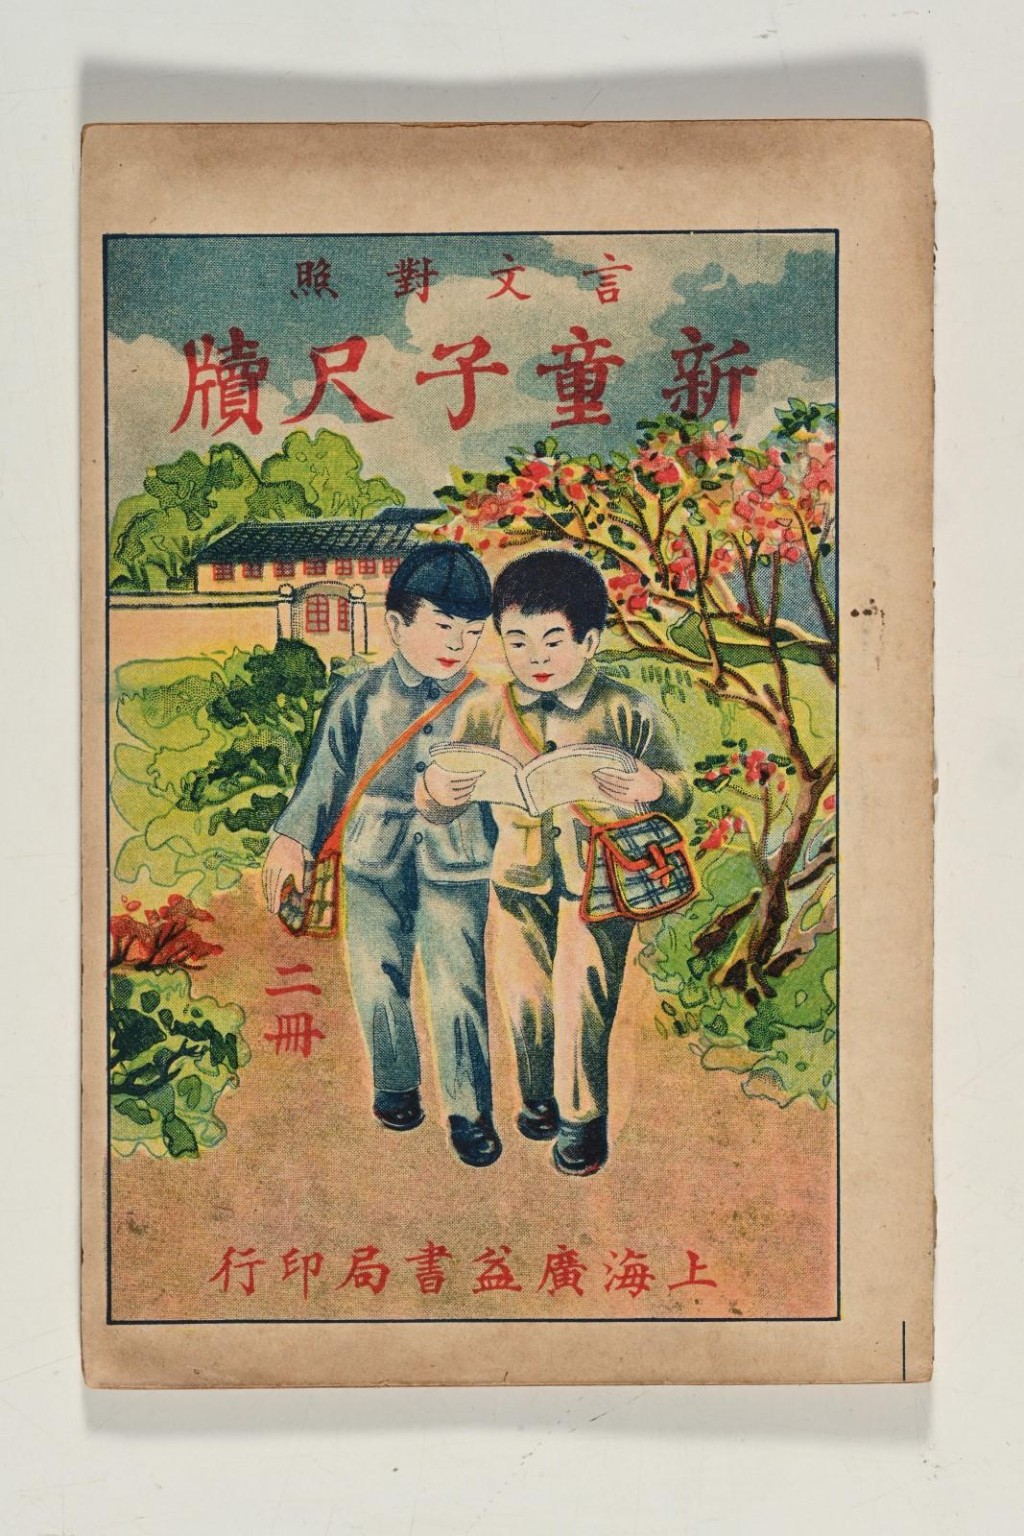 1932年上海廣益書局印行的《新童子尺牘》。政府新聞處